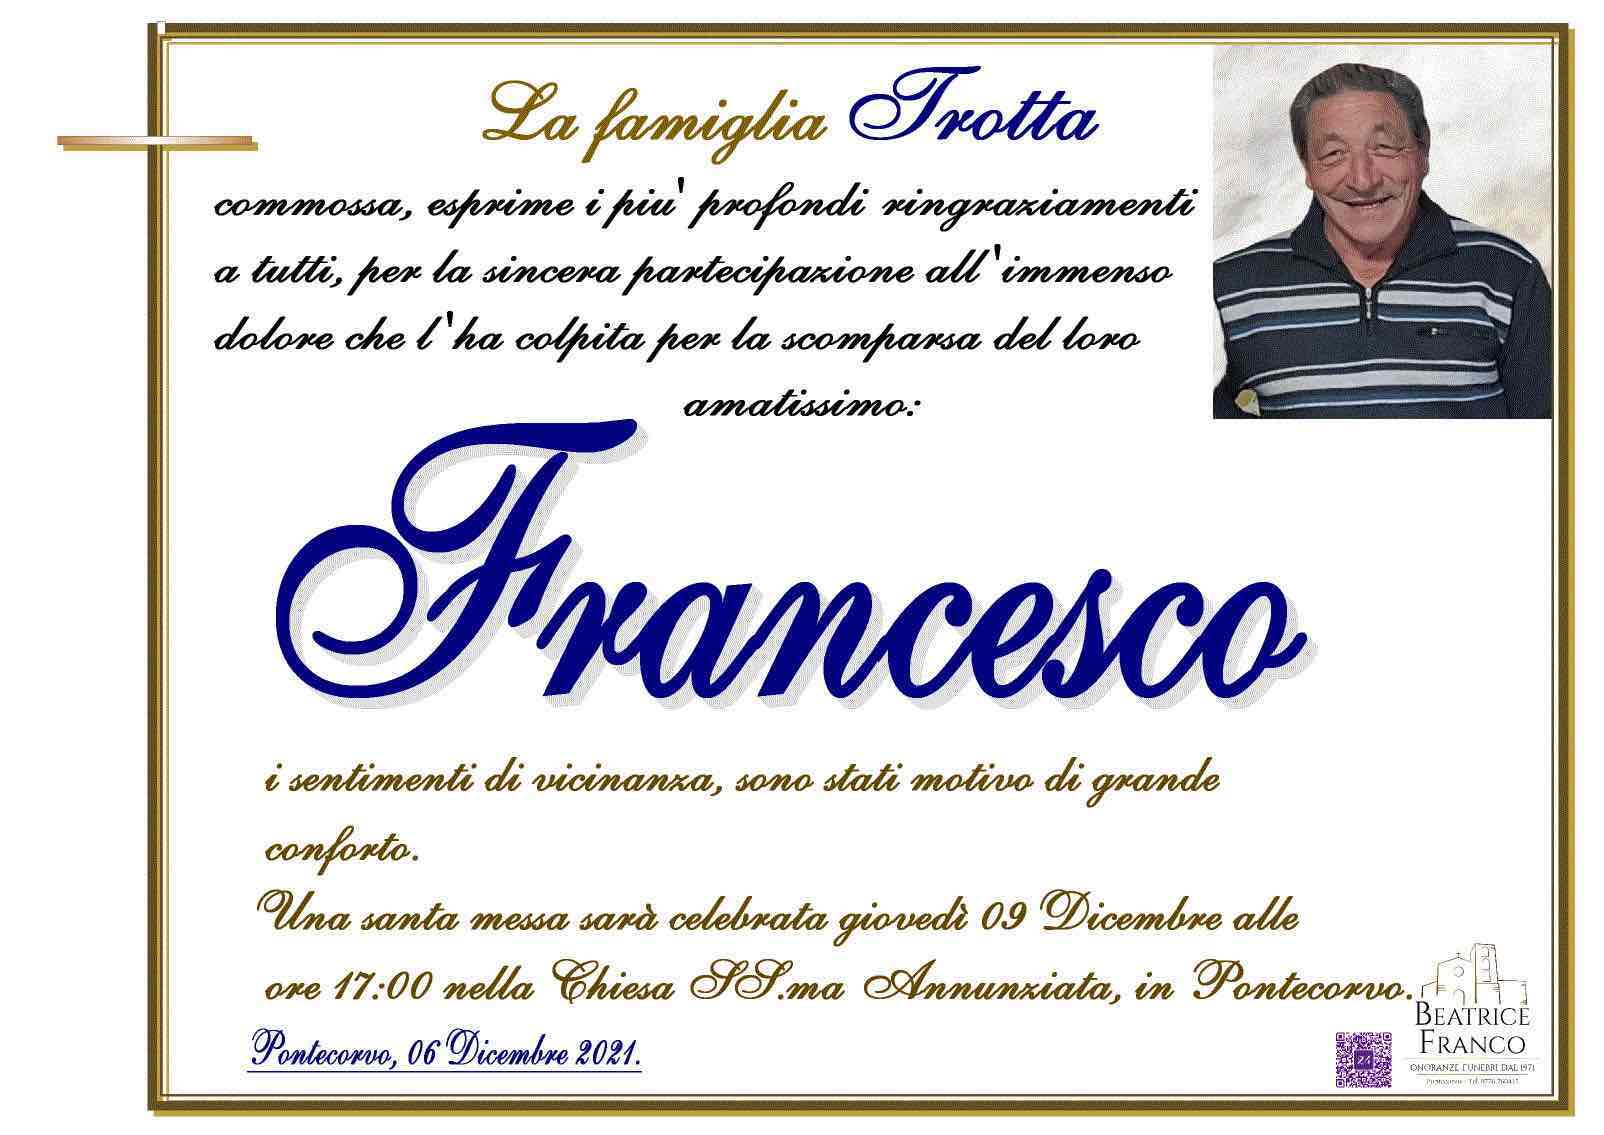 Francesco Trotta